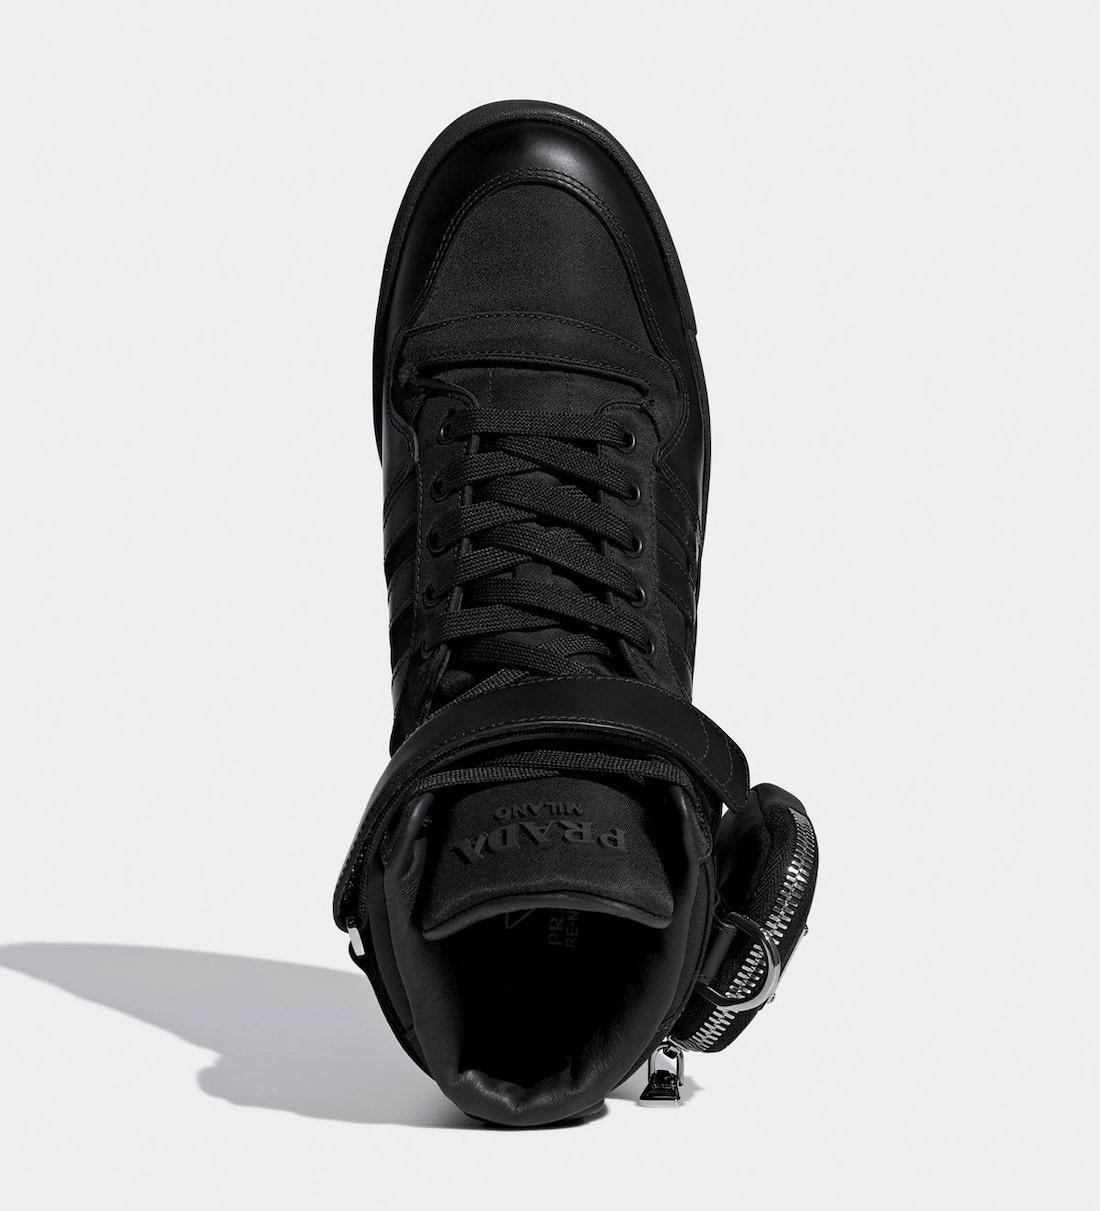 Prada adidas Forum High Black GY7040 Release Date